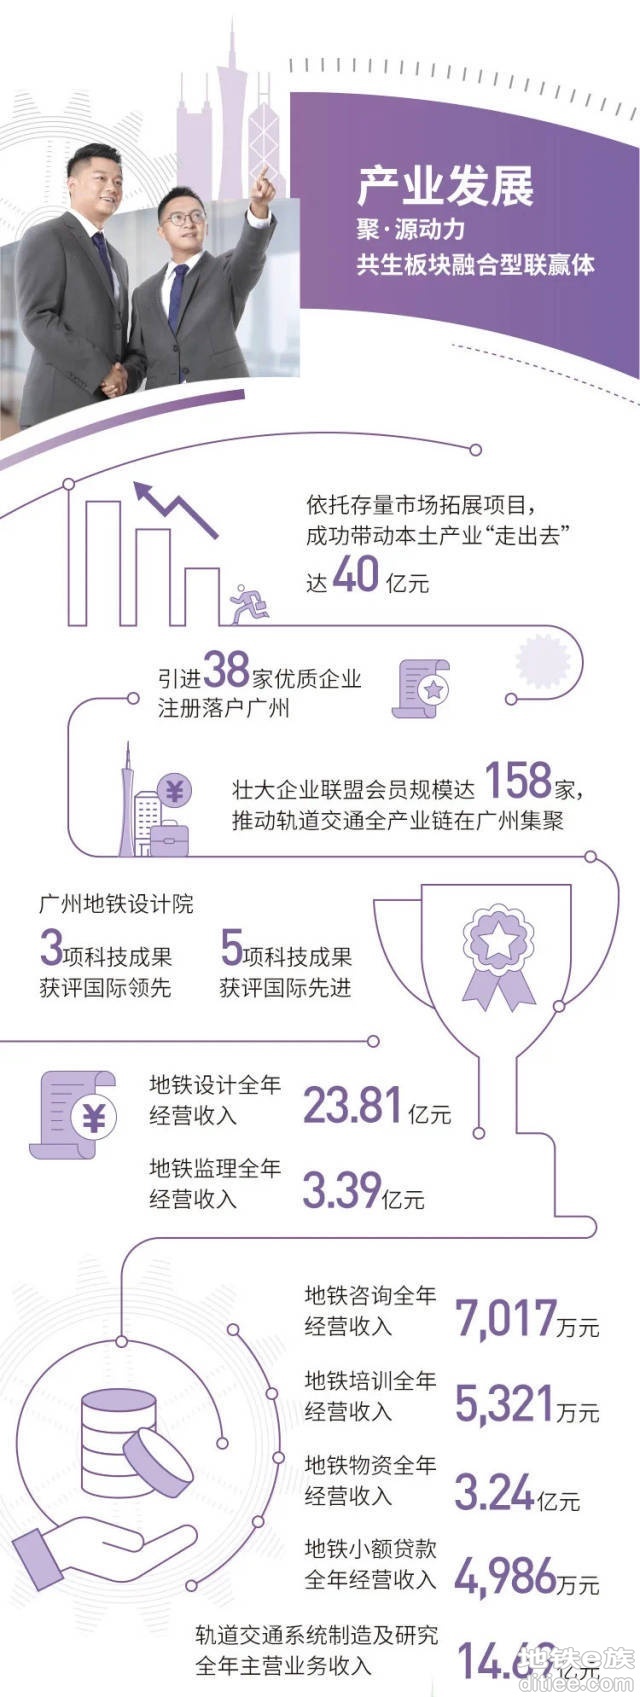 运营里程世界前五，投资780亿元！广州地铁发布2021年报